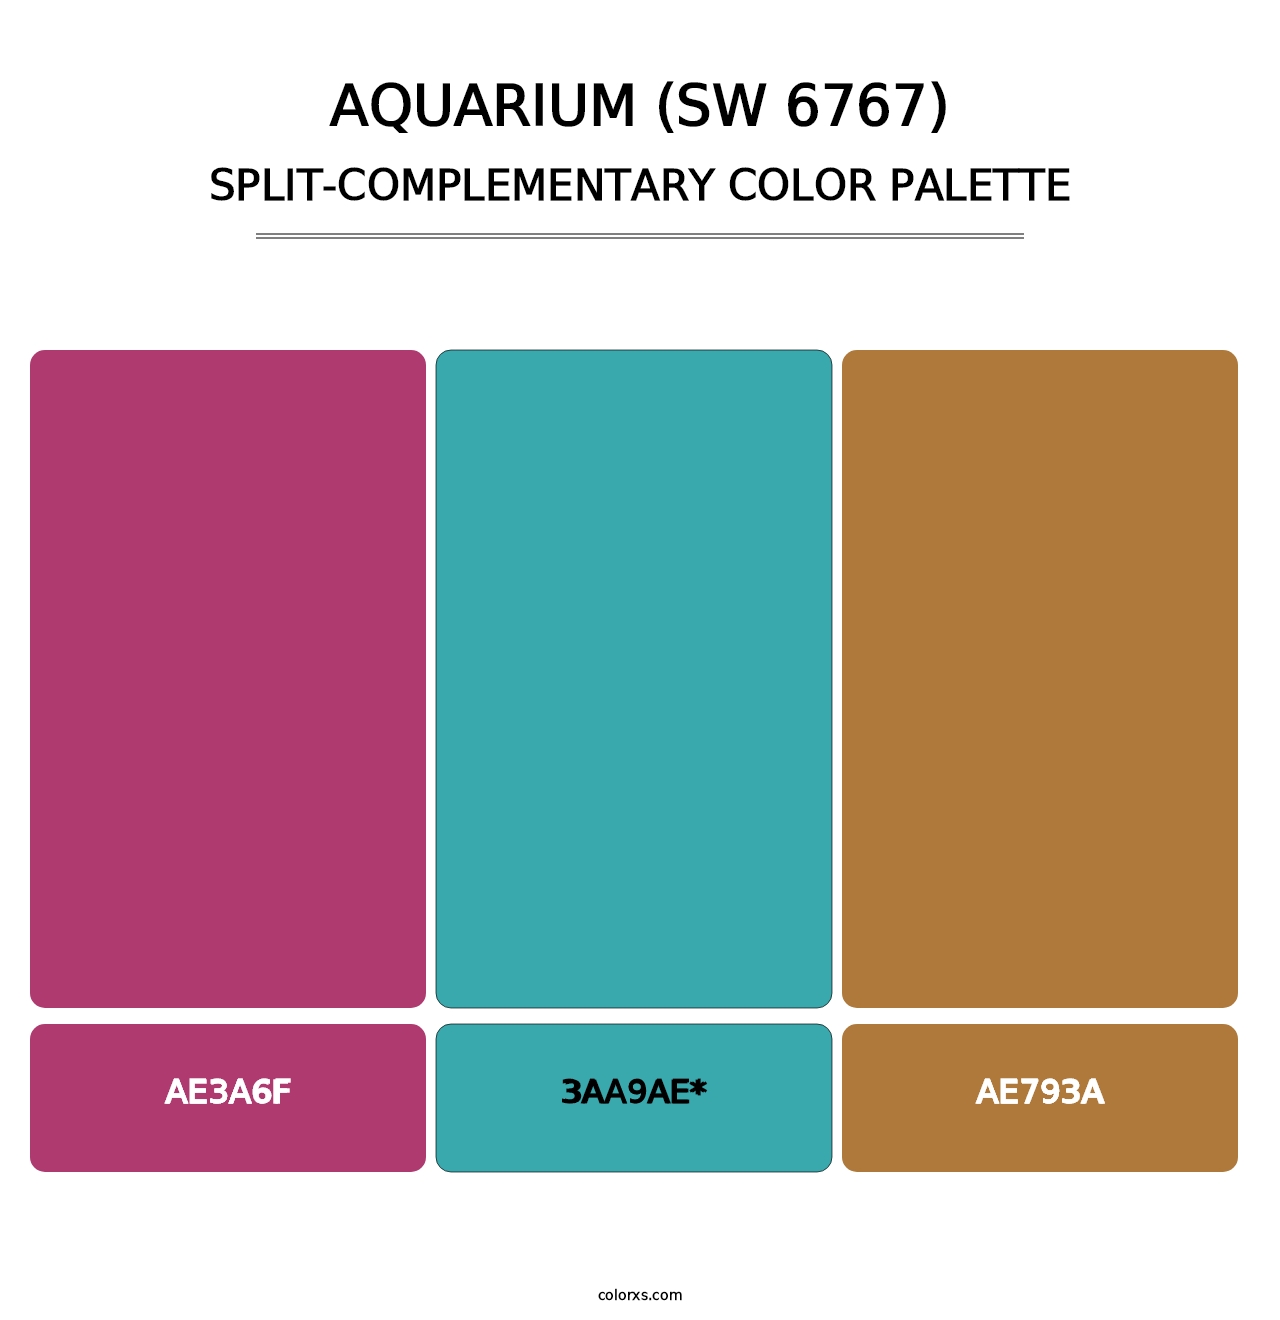 Aquarium (SW 6767) - Split-Complementary Color Palette